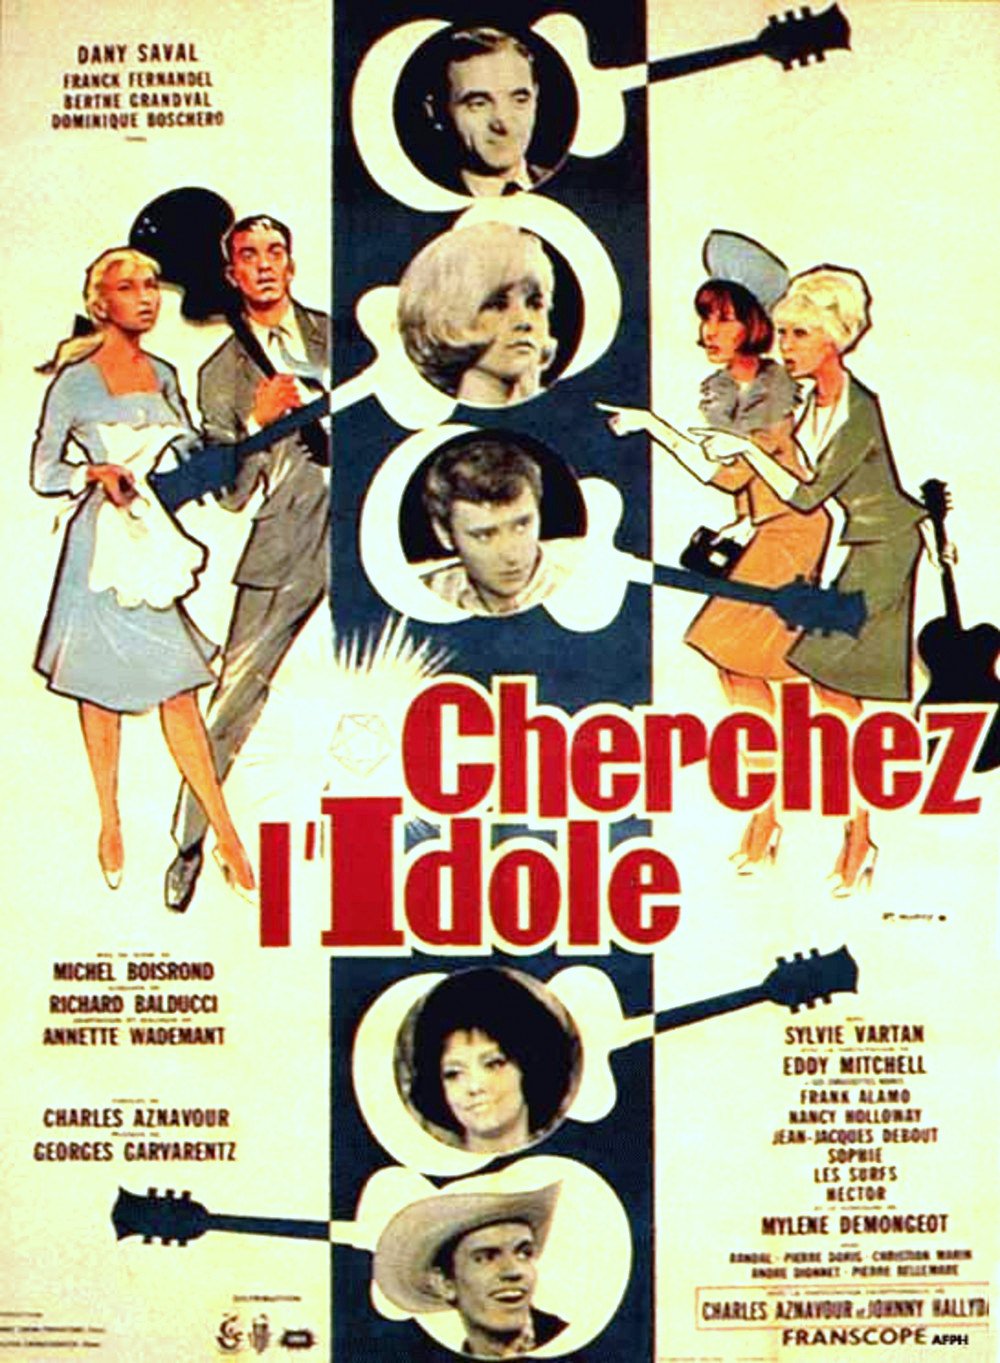 Affiche France de "Cherchez l'idole" 1964